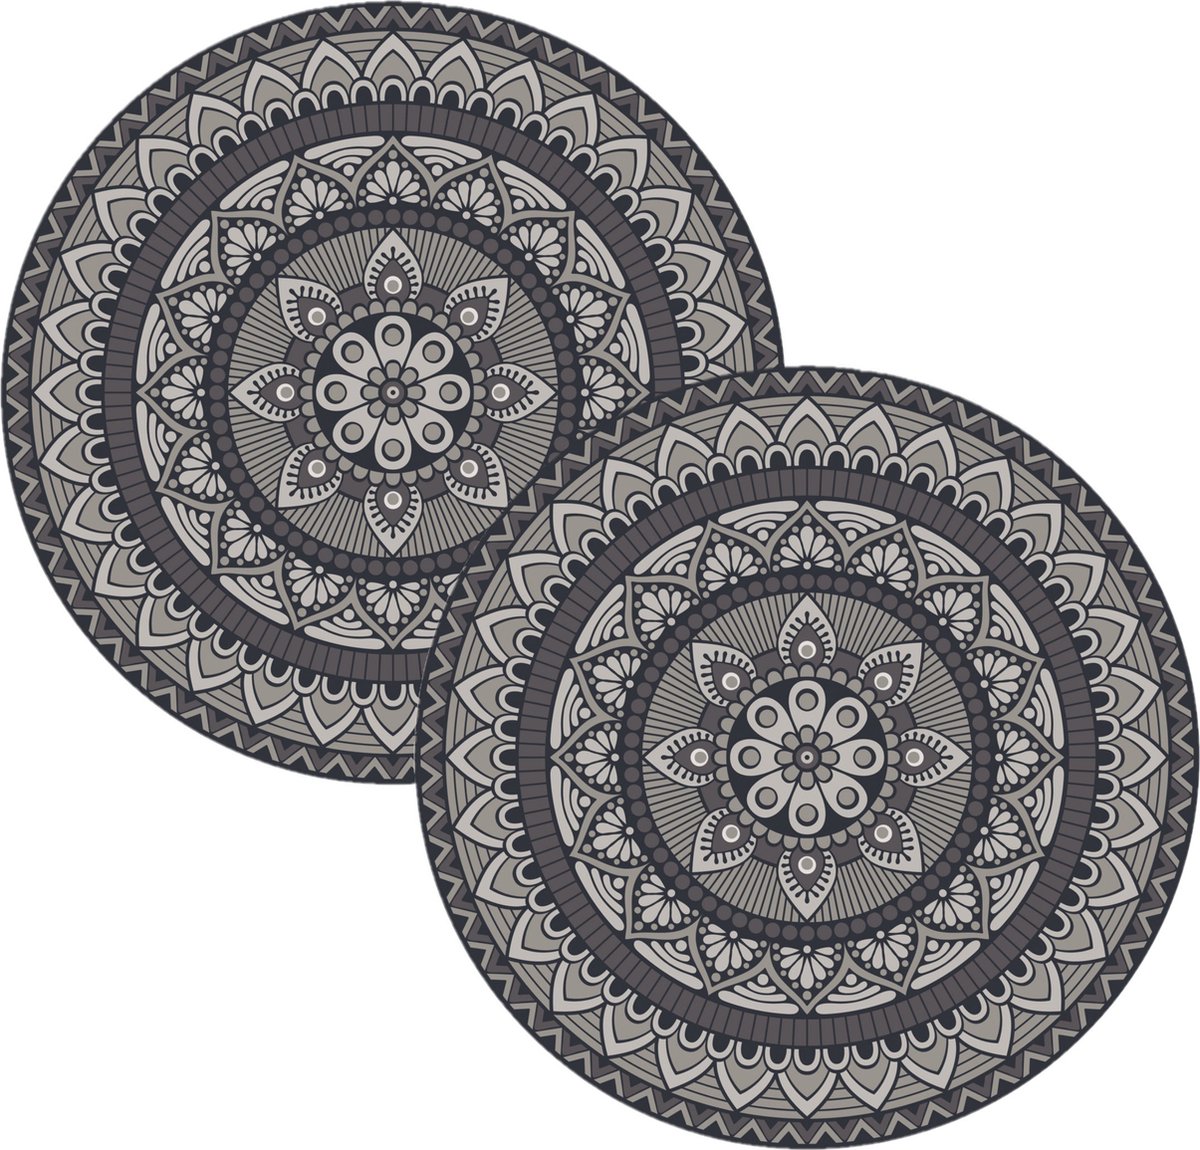 2x stuks mandela stijl ronde grijze placemats van vinyl D38 cm - Antislip/waterafstotend - Stevige top kwaliteit